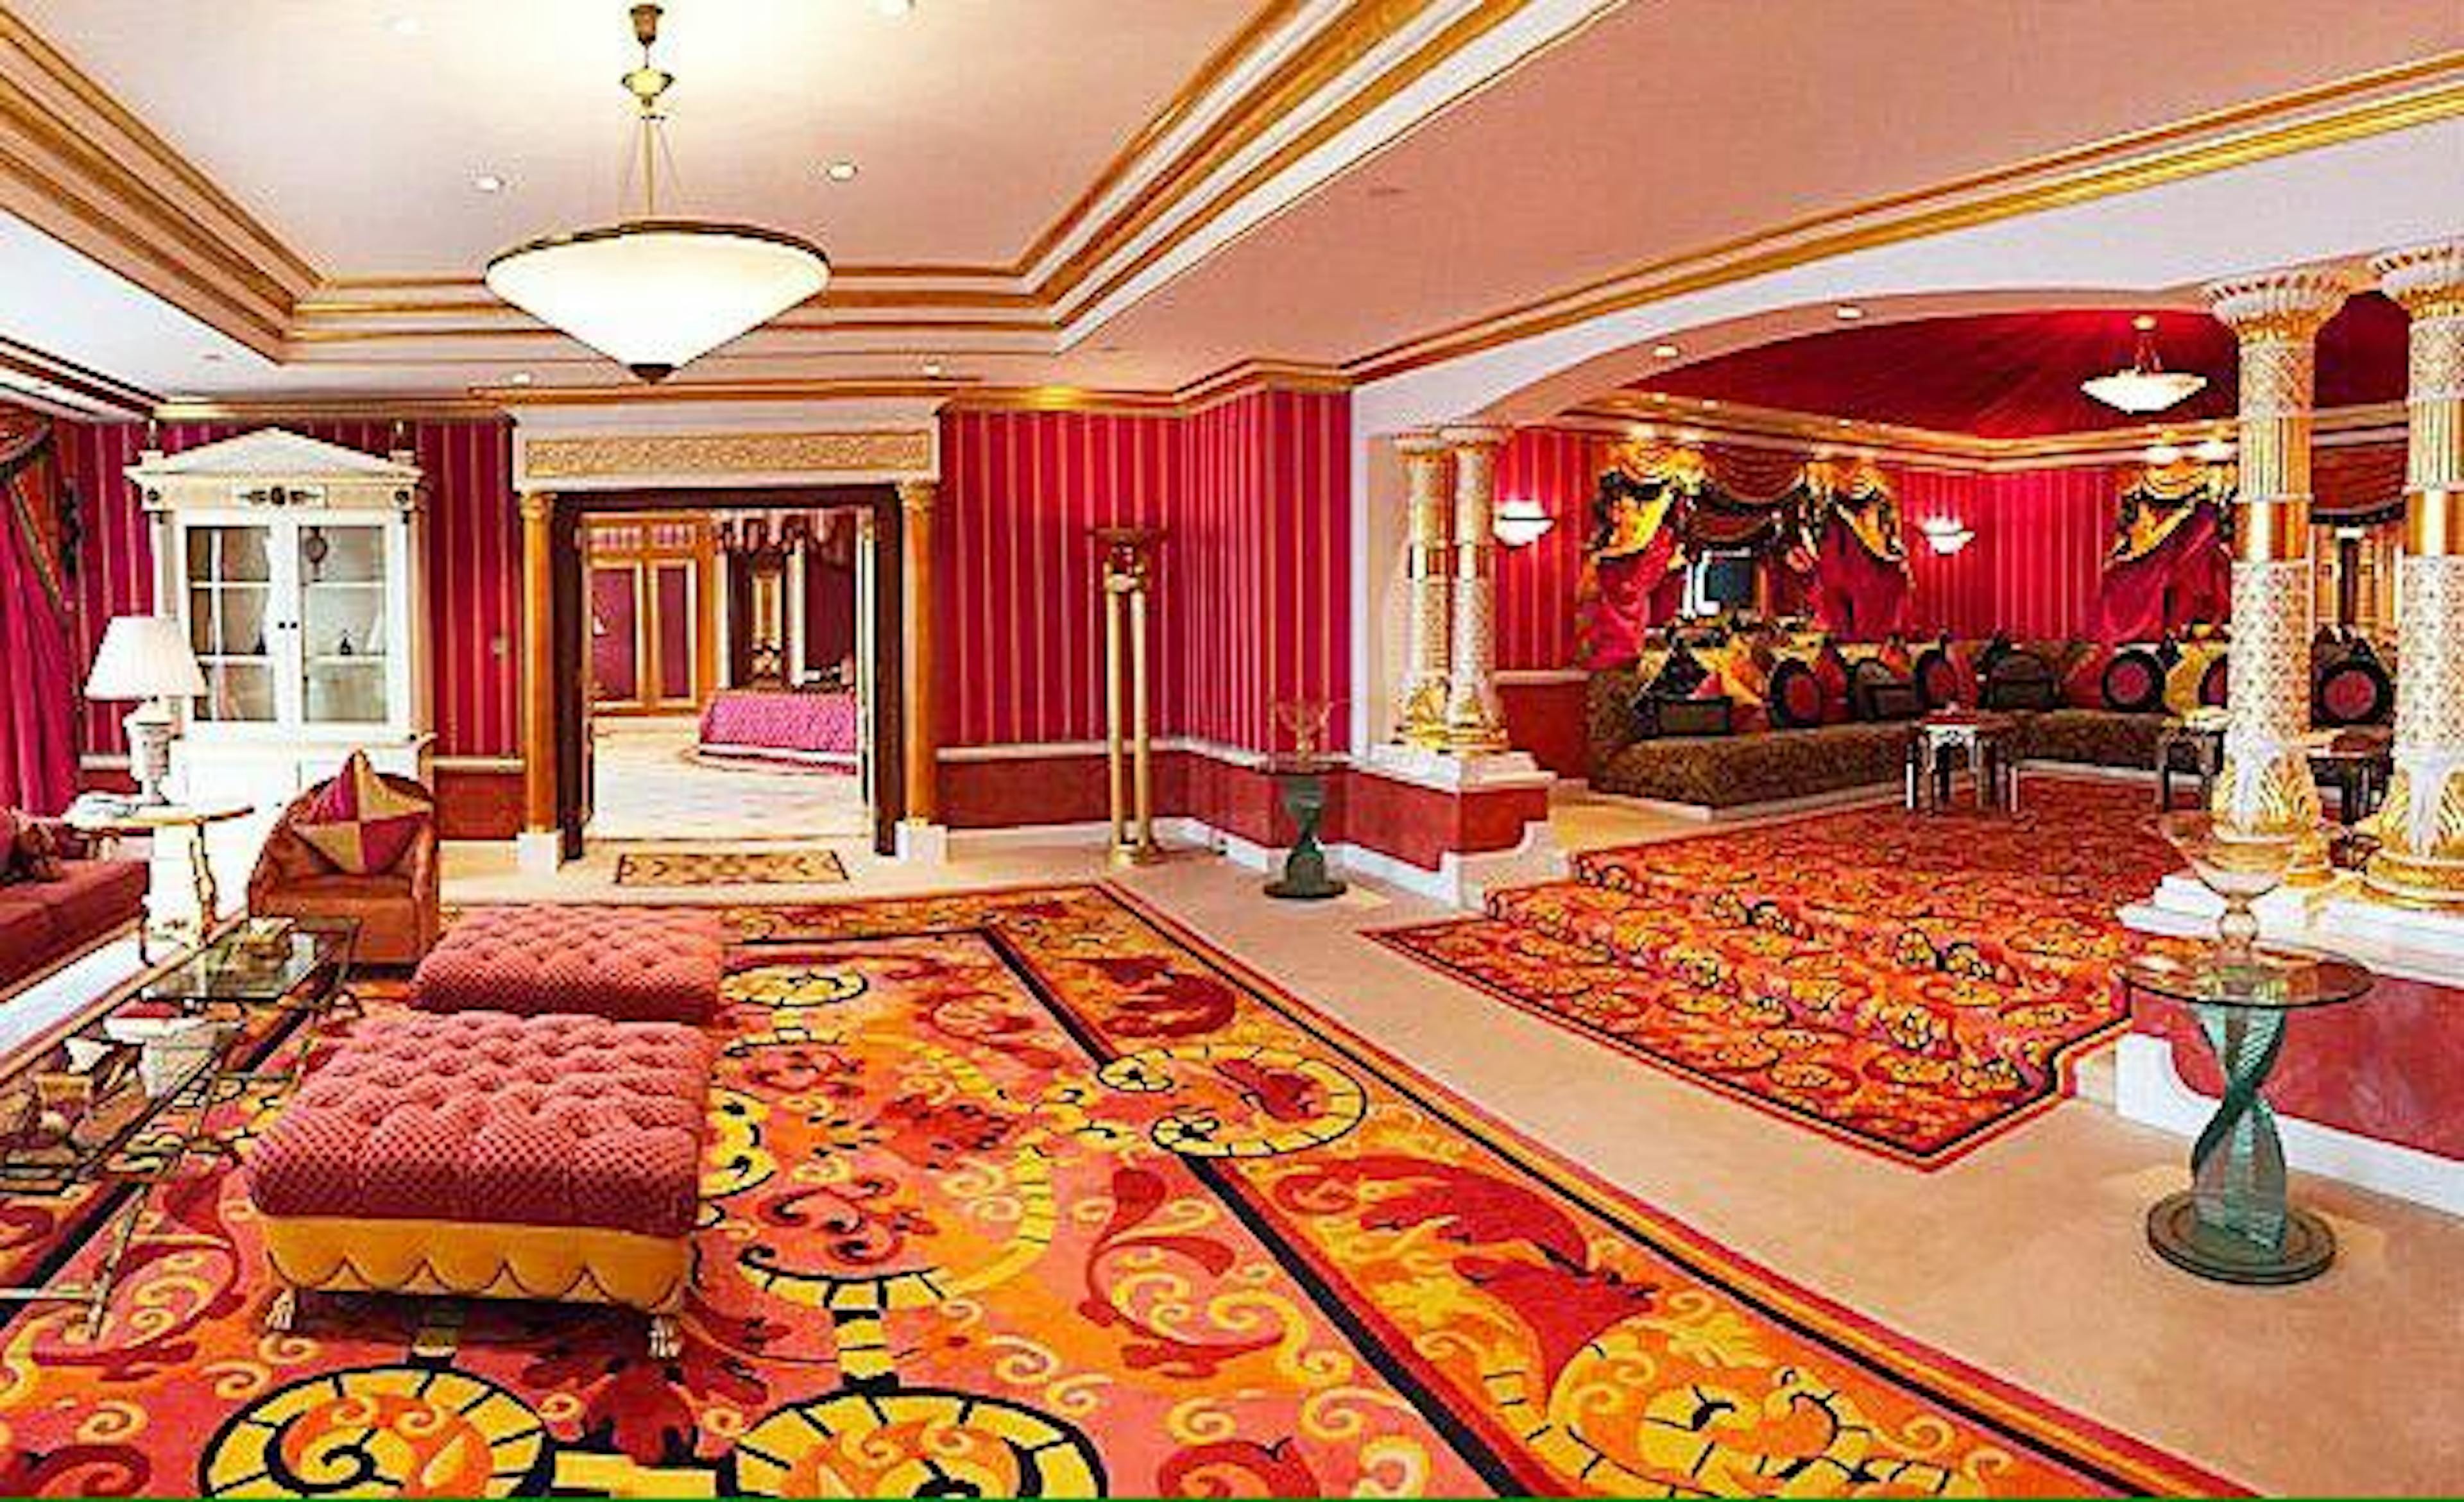 burj al arab hotel royal suite